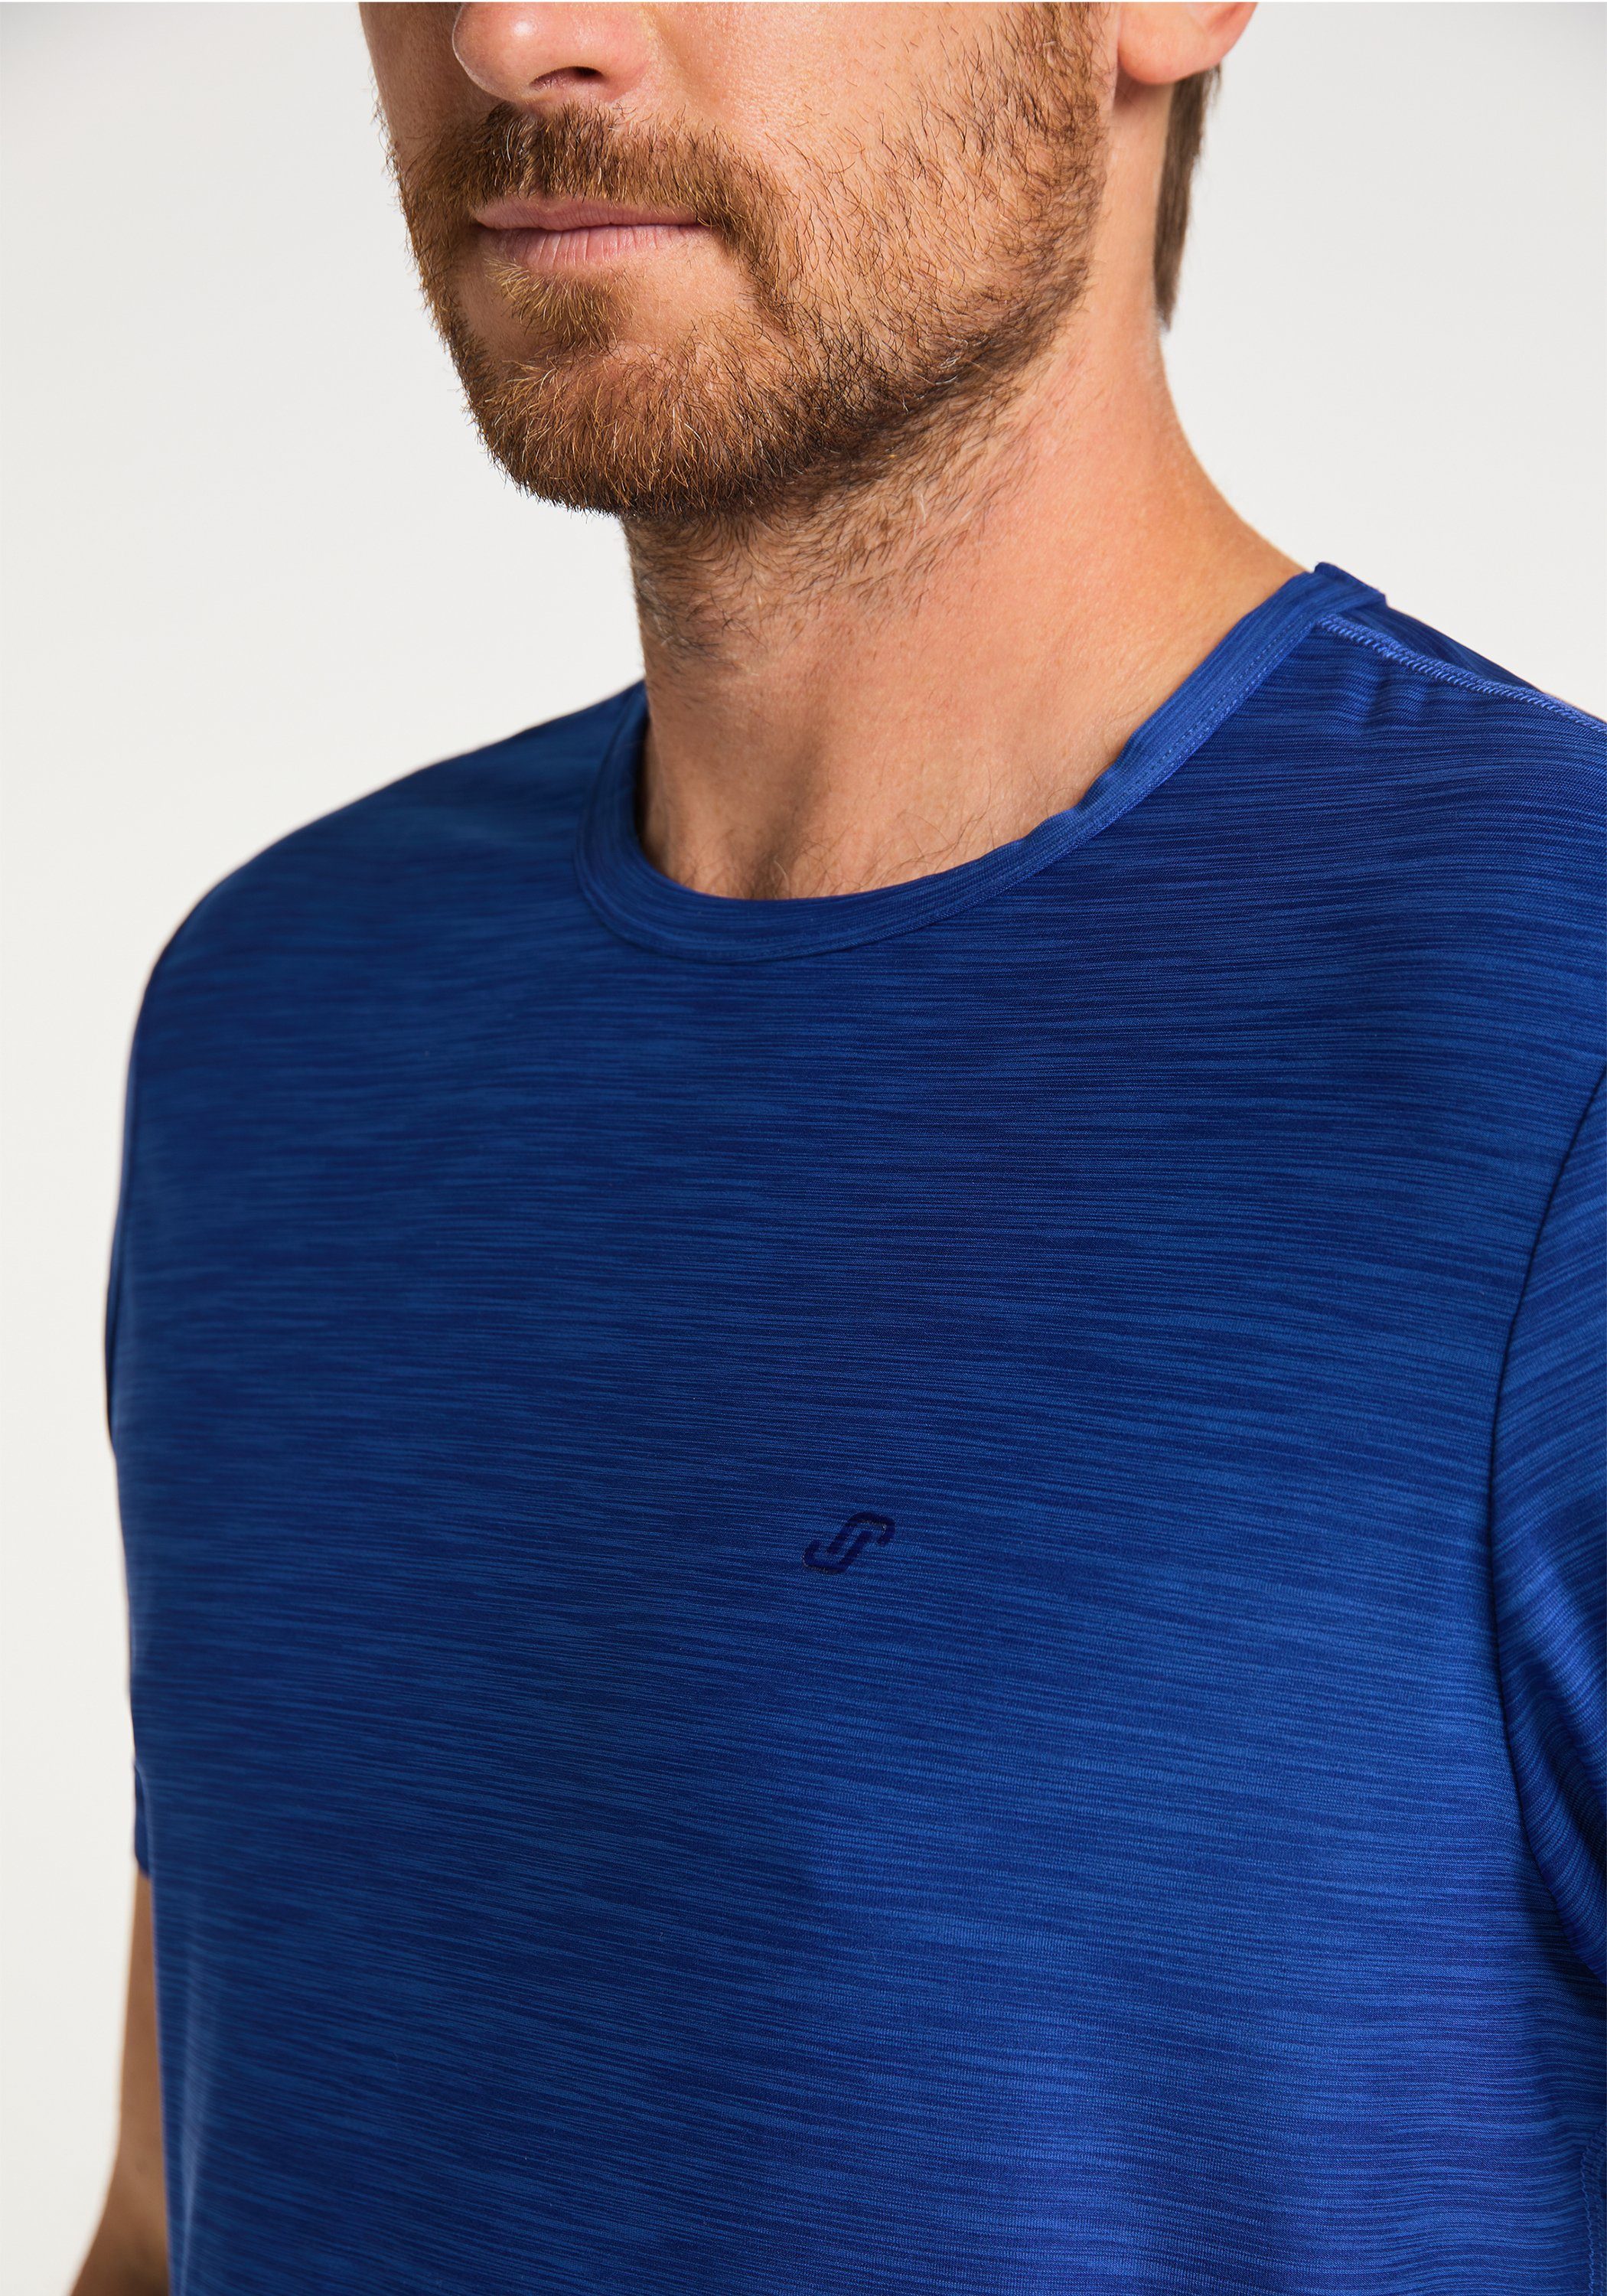 Joy T-Shirt Sportswear kobalt melange T-Shirt VITUS